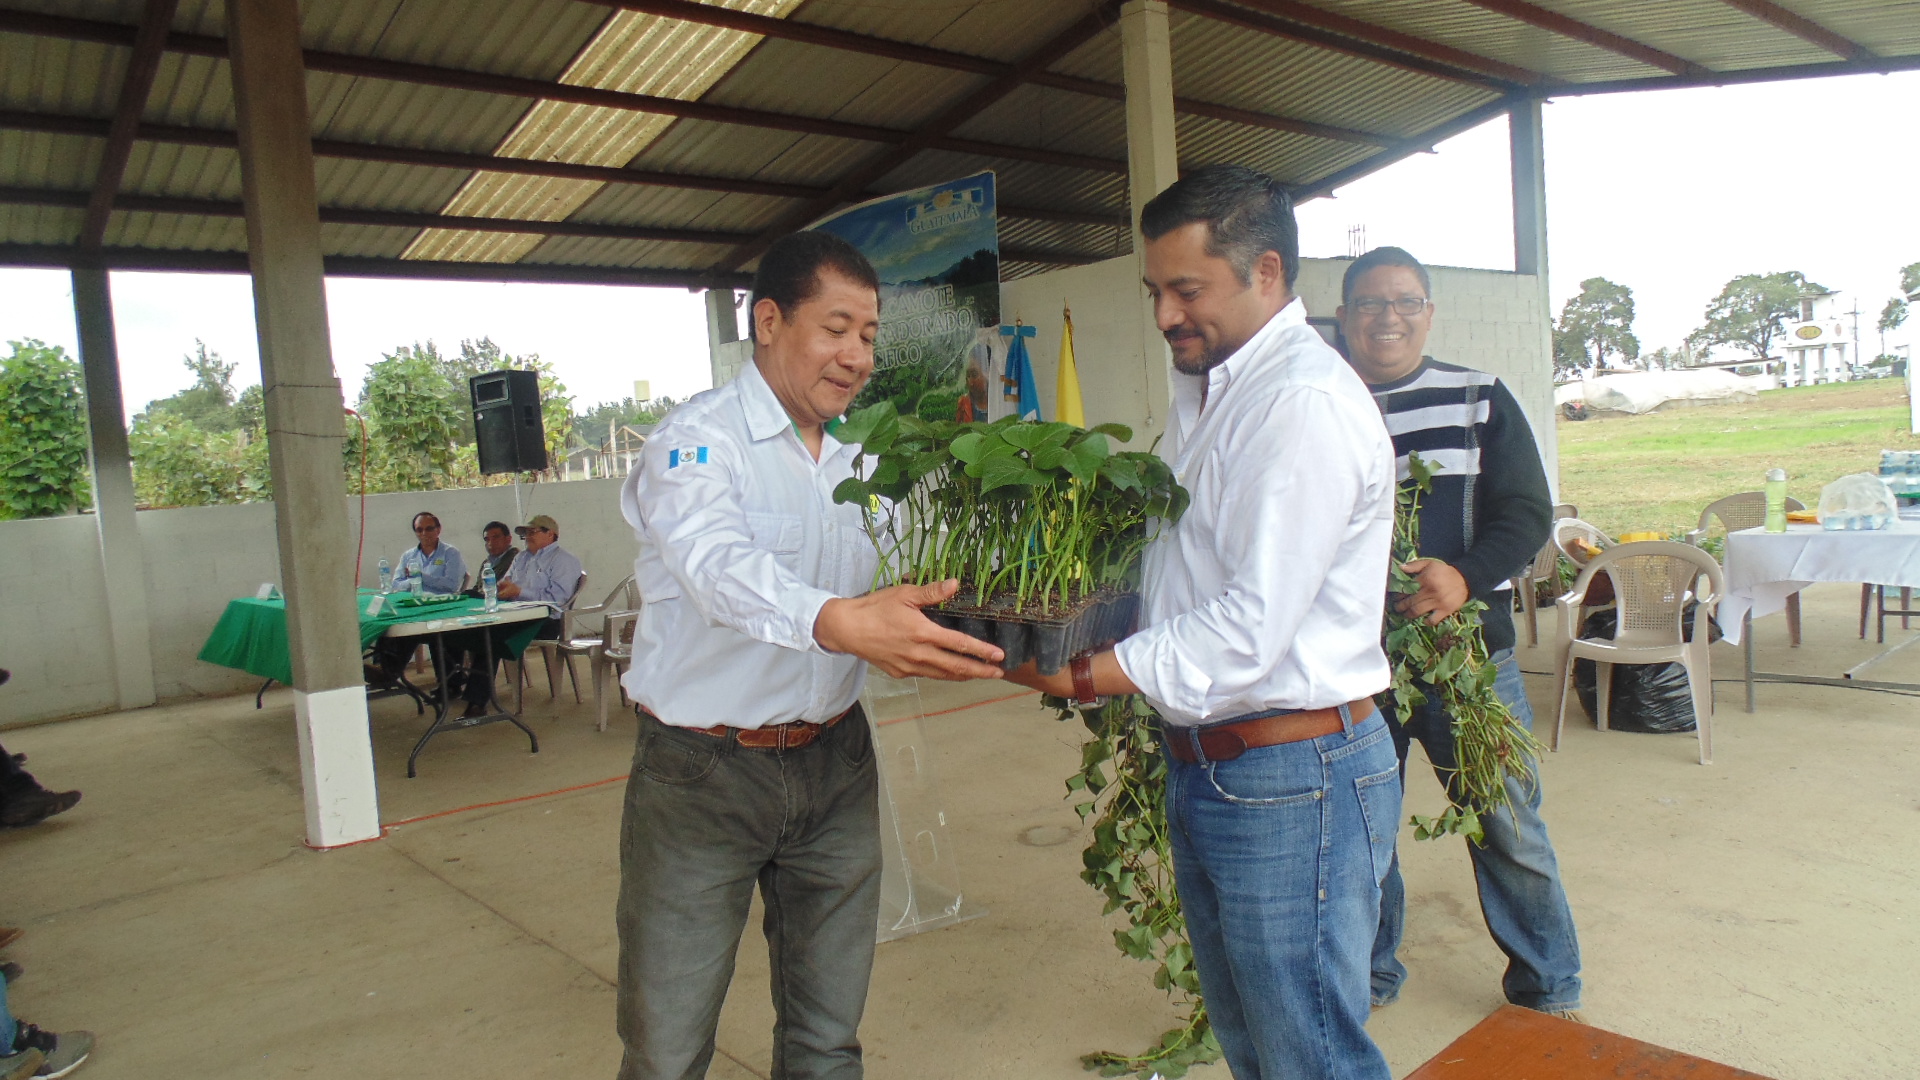 Alternativa sostenible contra la desnutrición, primeras dos variedades de camote biofortificado en Guatemala a disposición de los agricultores